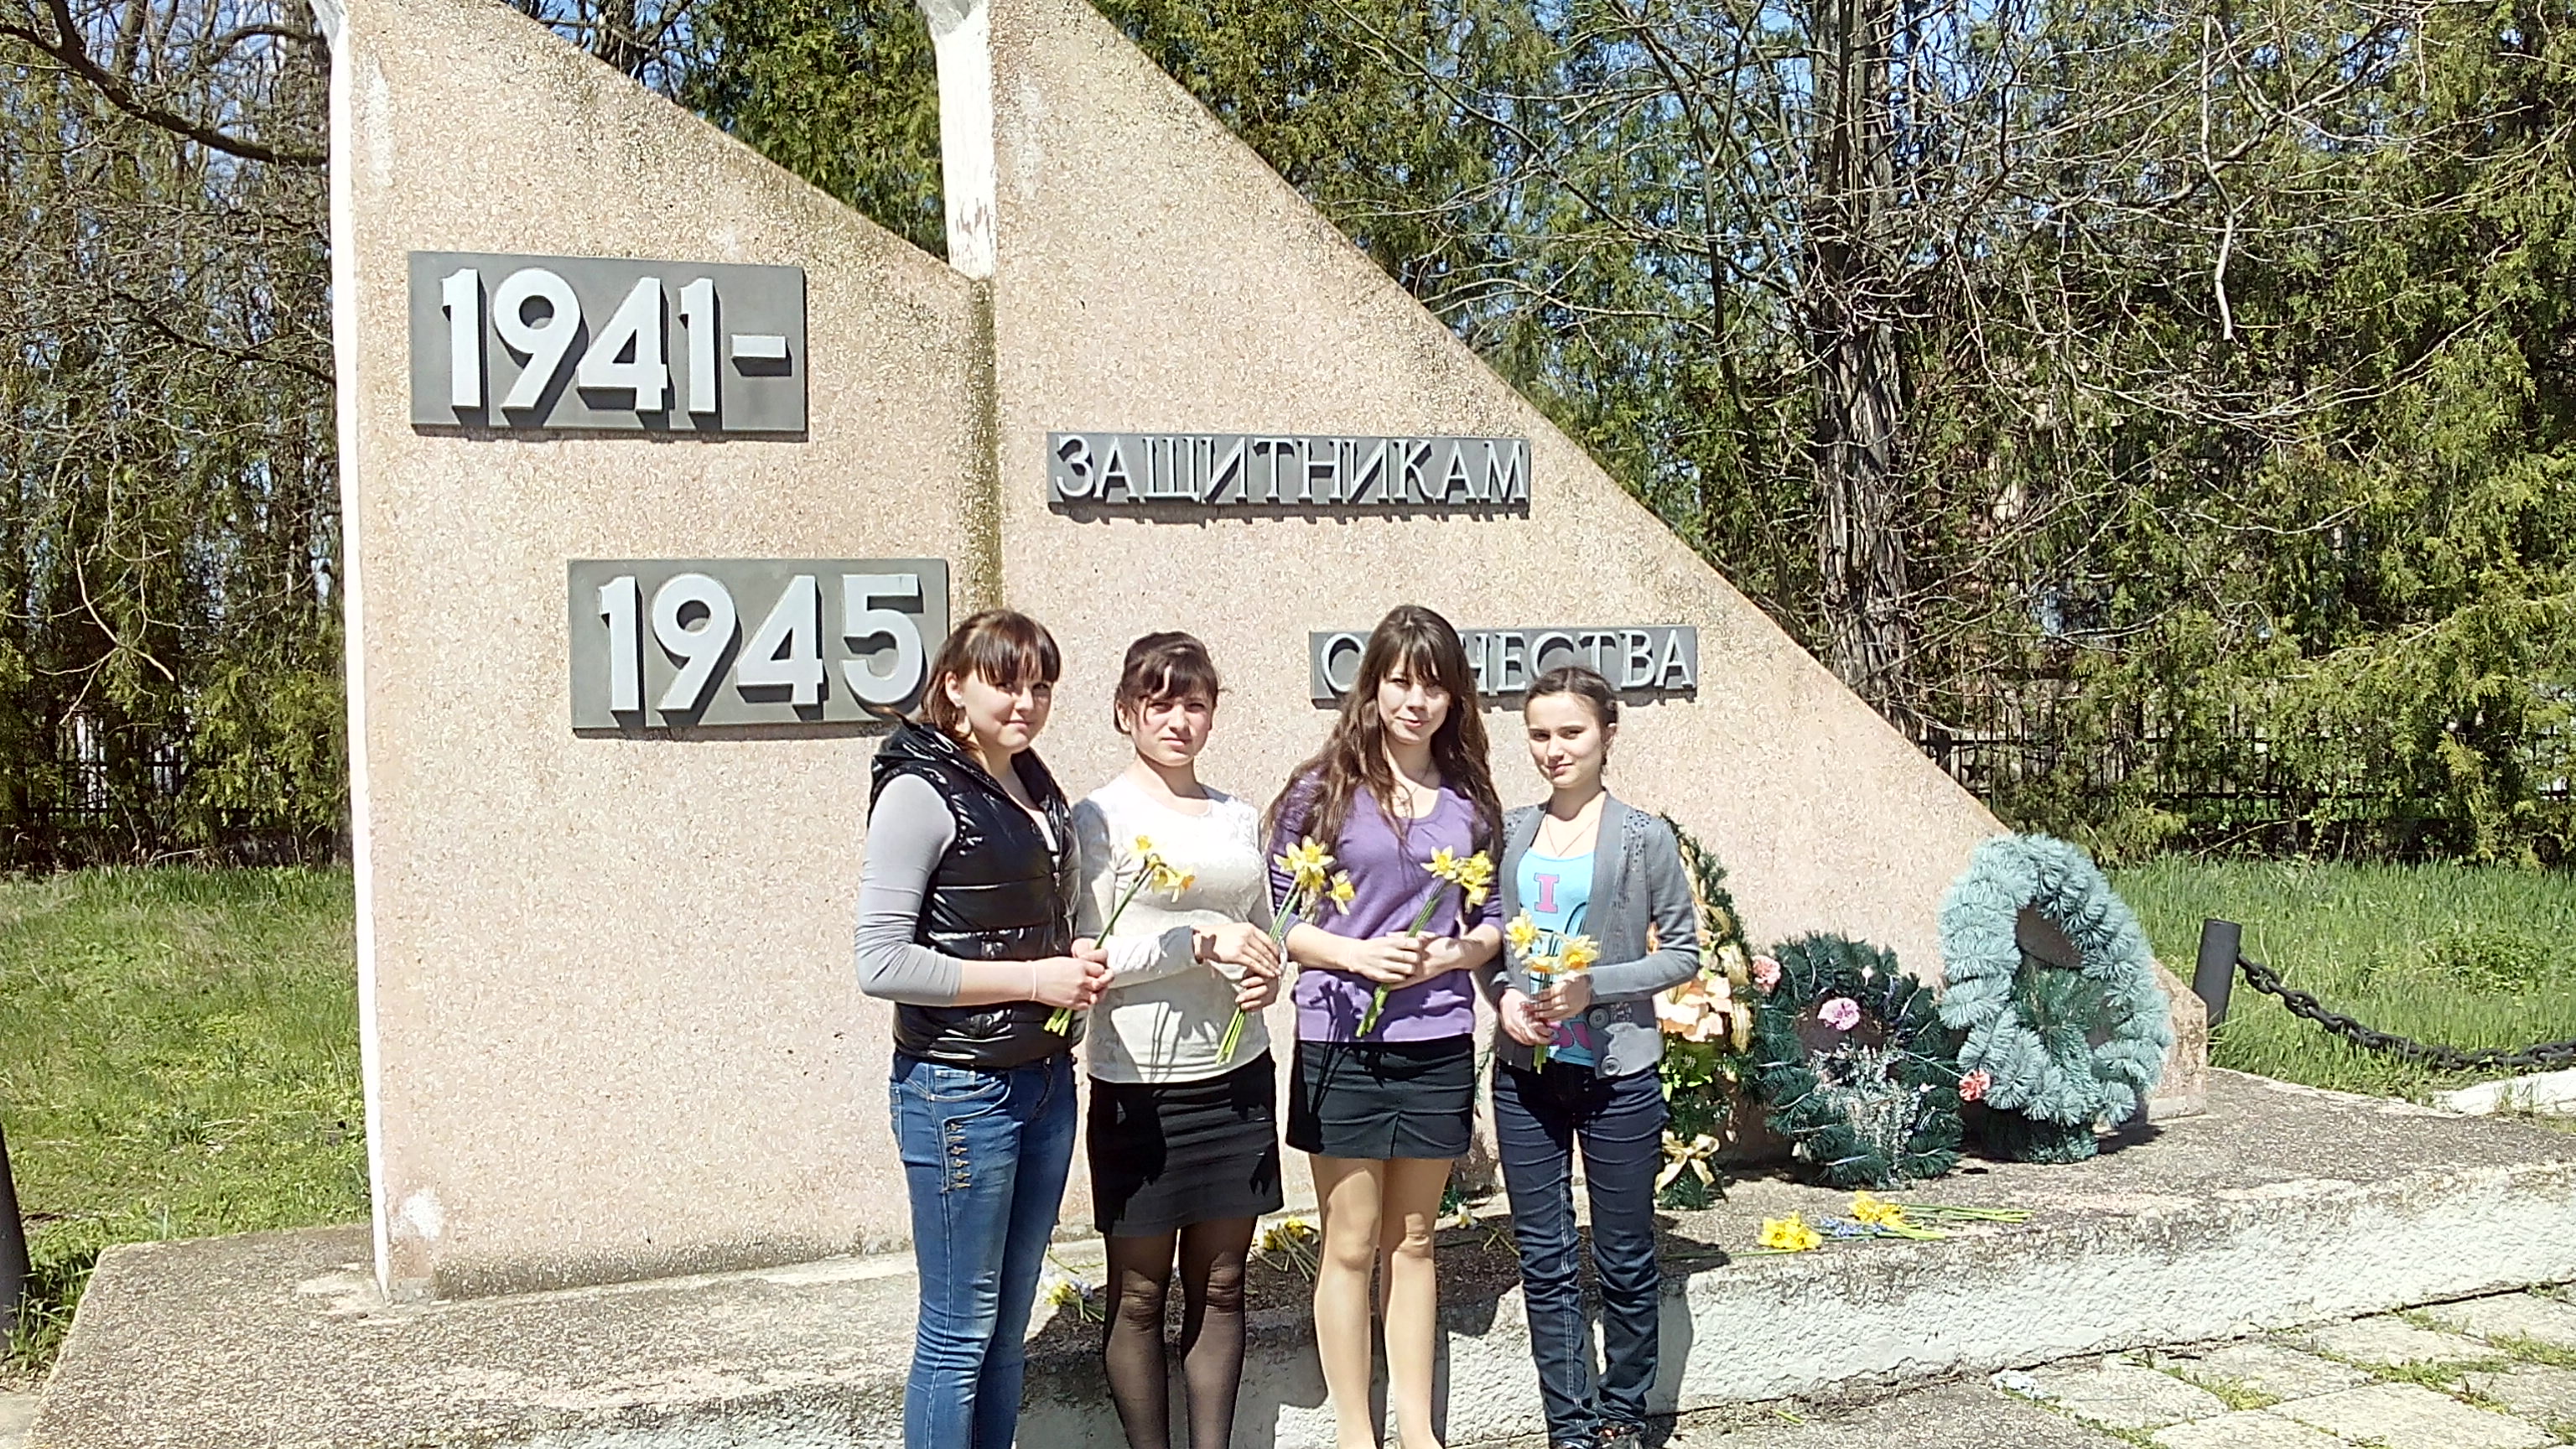 Памятник село Емельяновка Нижнегорского района